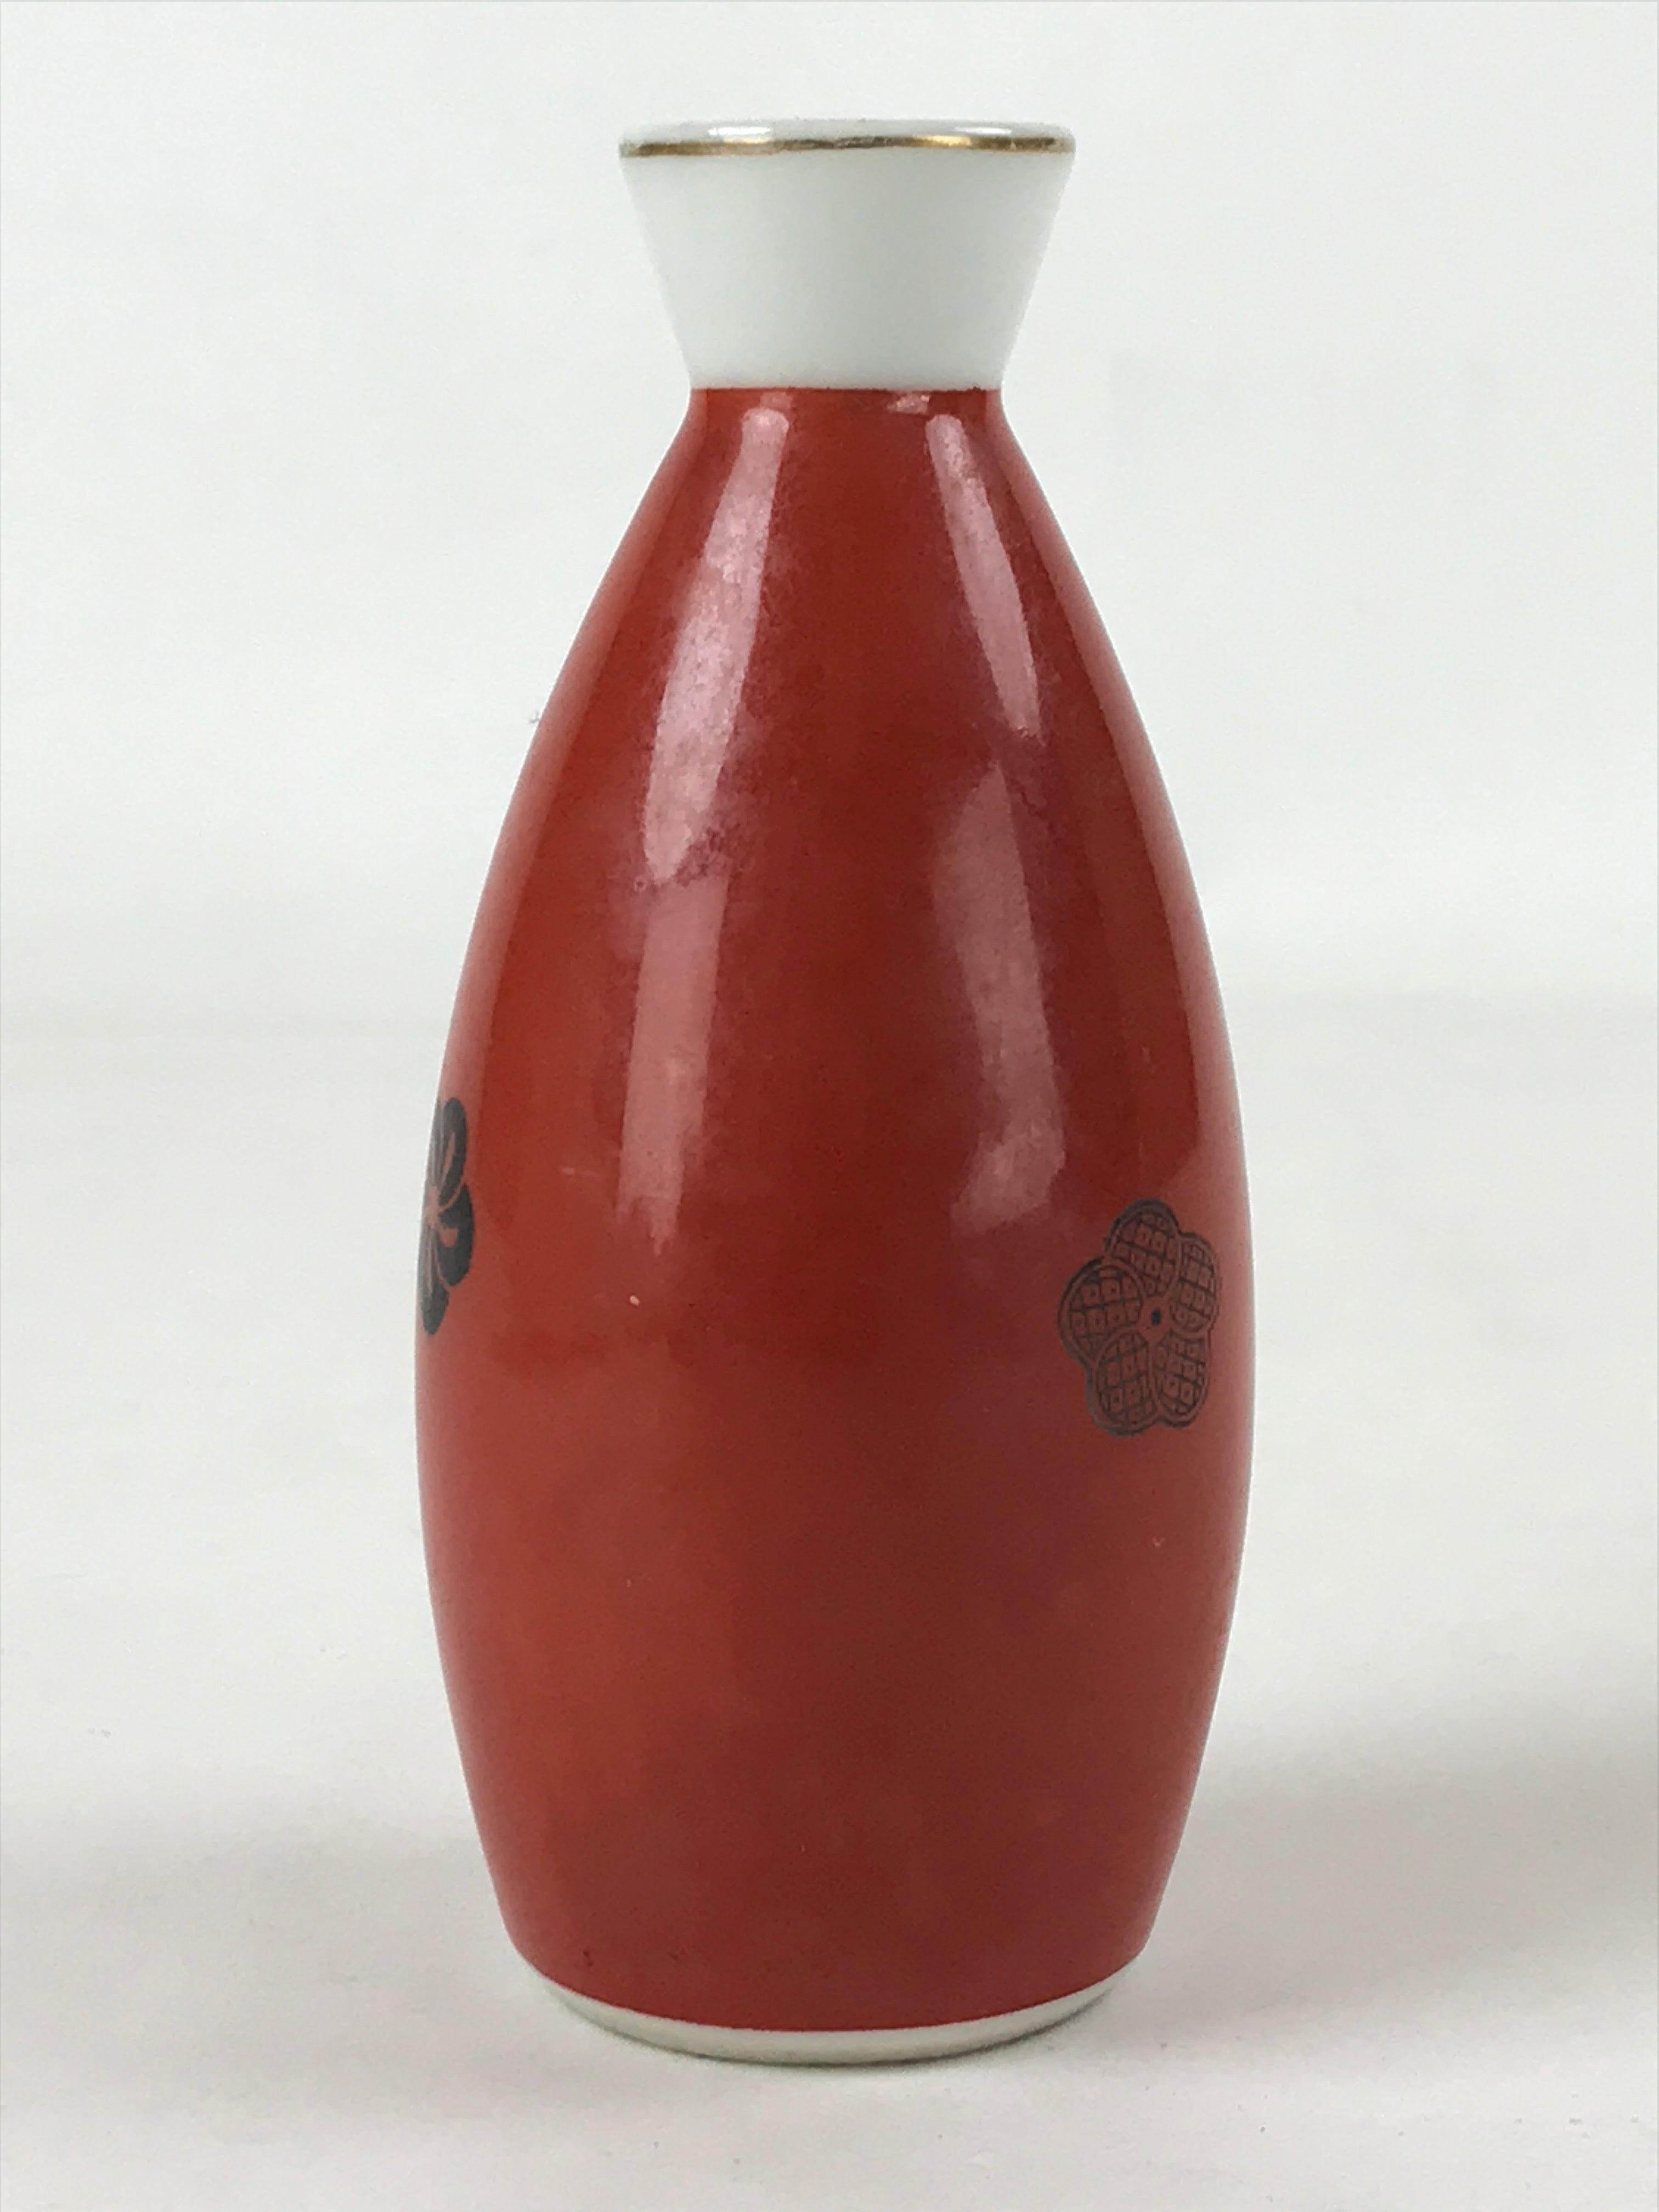 Japanese Sake Bottle Porcelain Tokkuri Vtg Solid Red Ume Plum Blossom TS608